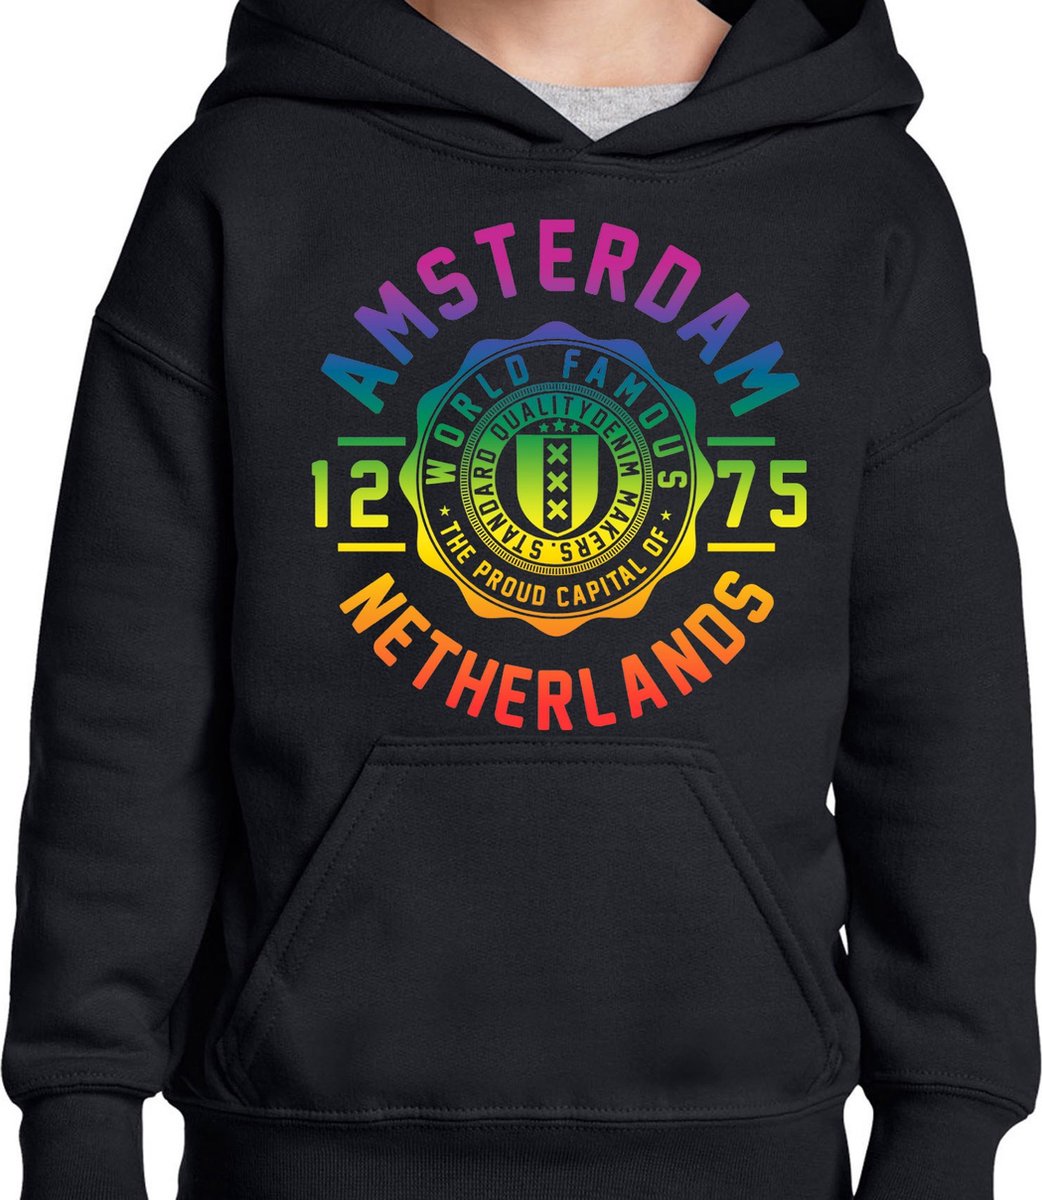 Hooded Sweater - Met Trekkoord - Capuchon - Chill - Trui - Vest - met capuchon - Outdoor - Gay Pride - Pride Rainbow - Regenboog - Amsterdam - World Famous - Zwart - Maat S